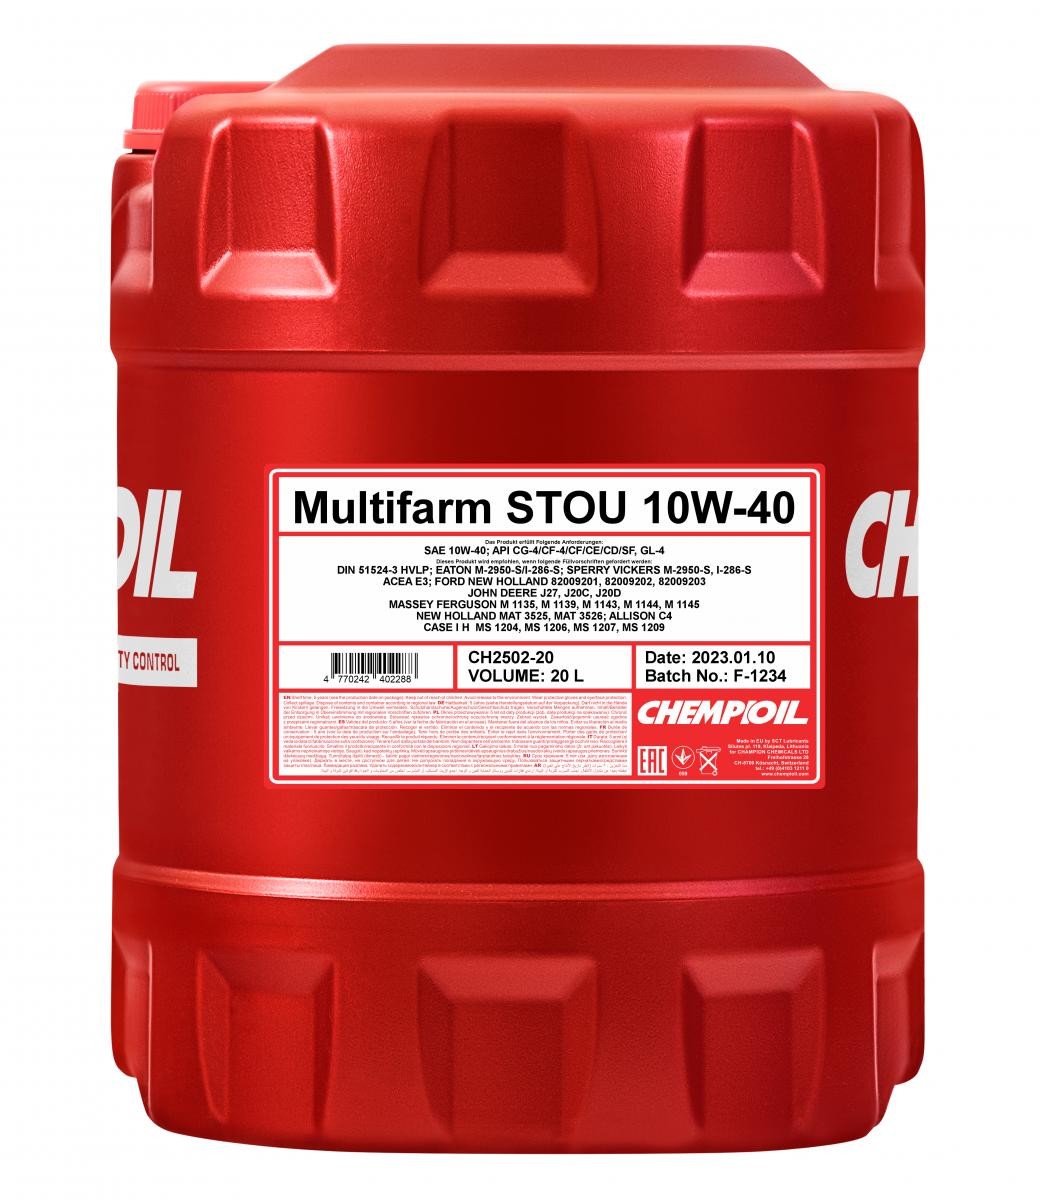 10W-40 Case MS 1207 Motorenöl - CHEMPIOIL CH2502-20 Multifarm, STOU